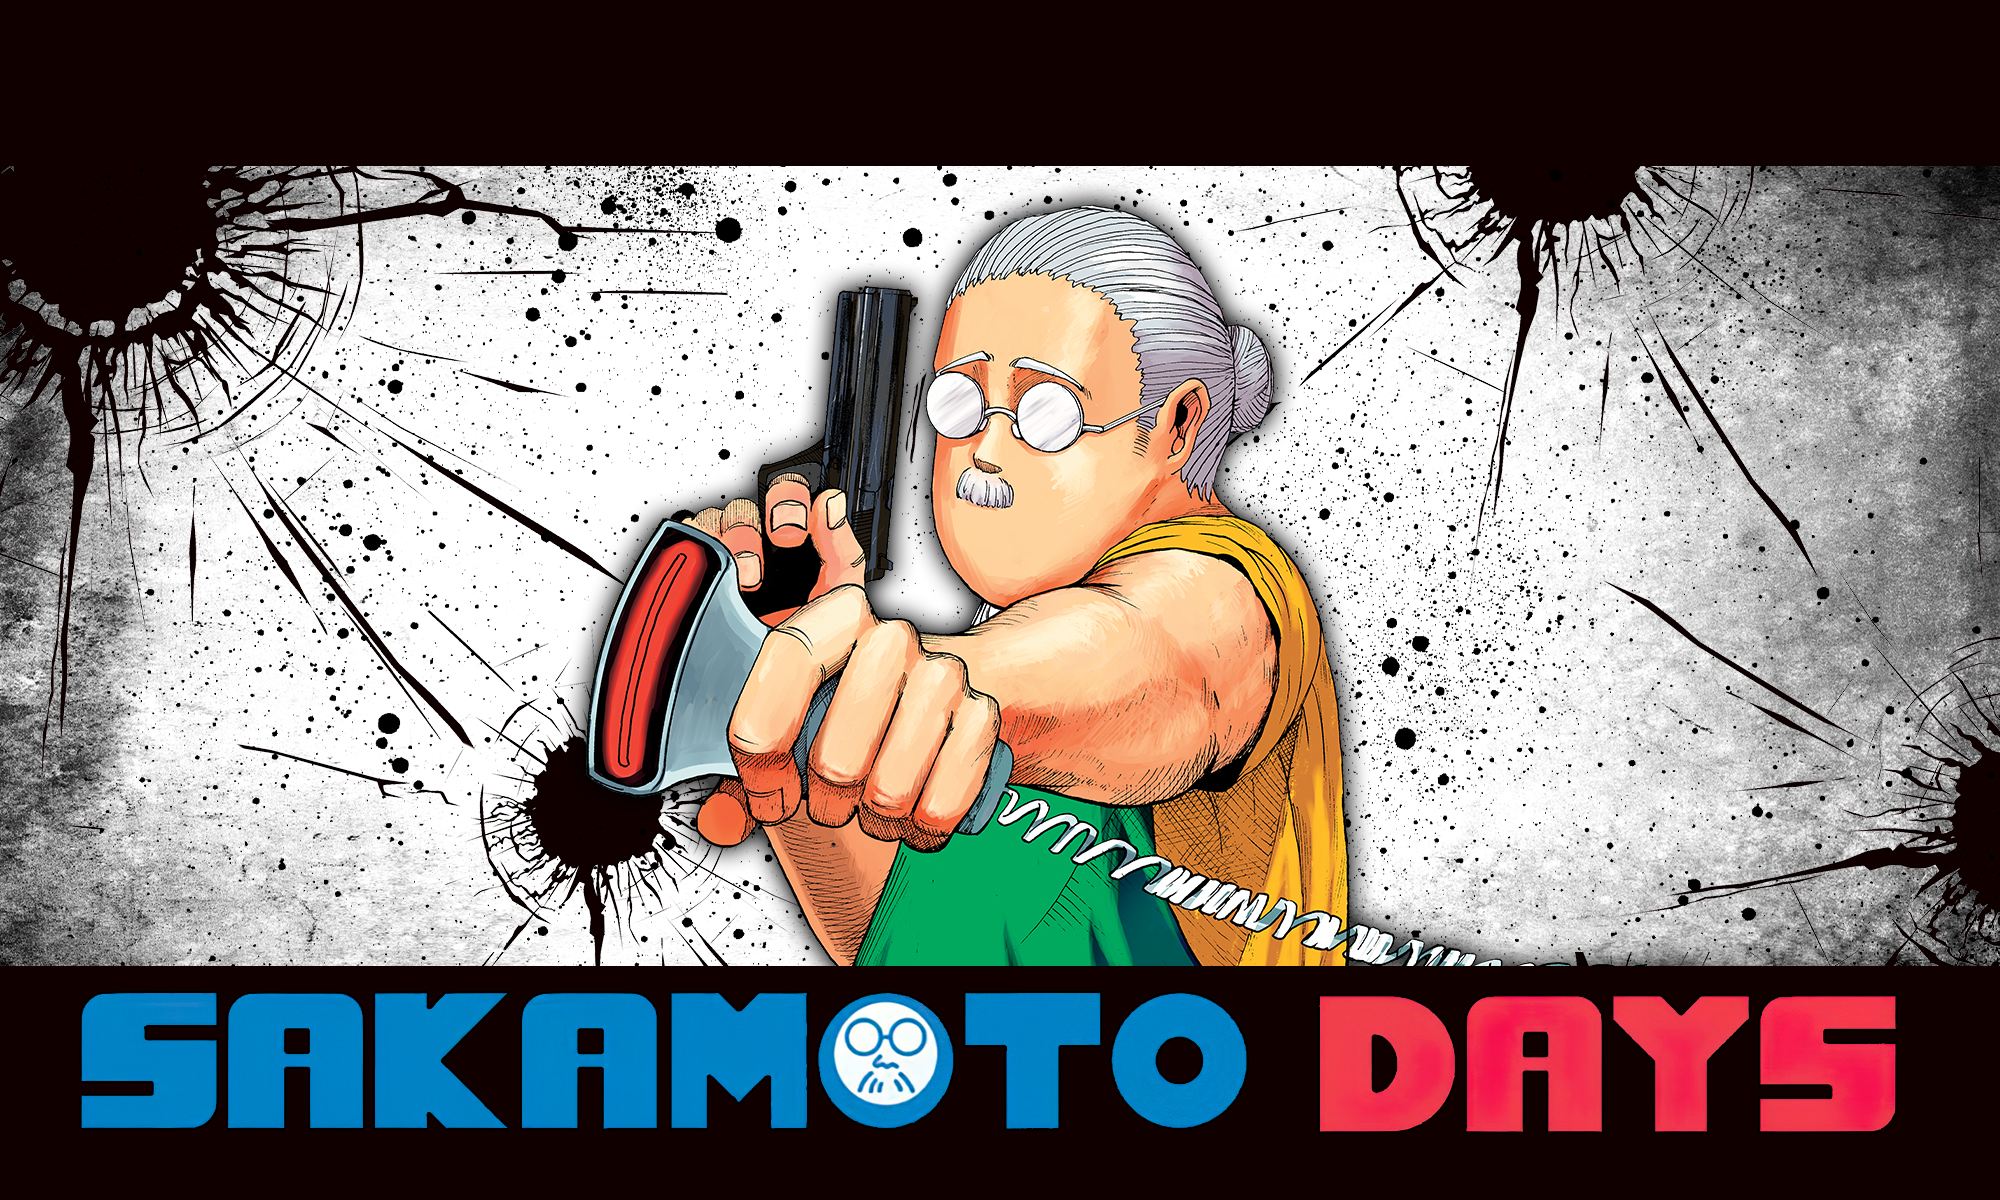 Anime 2000x1200 Sakamoto days manga Shonen Jump anime men anime gray hair glasses gun